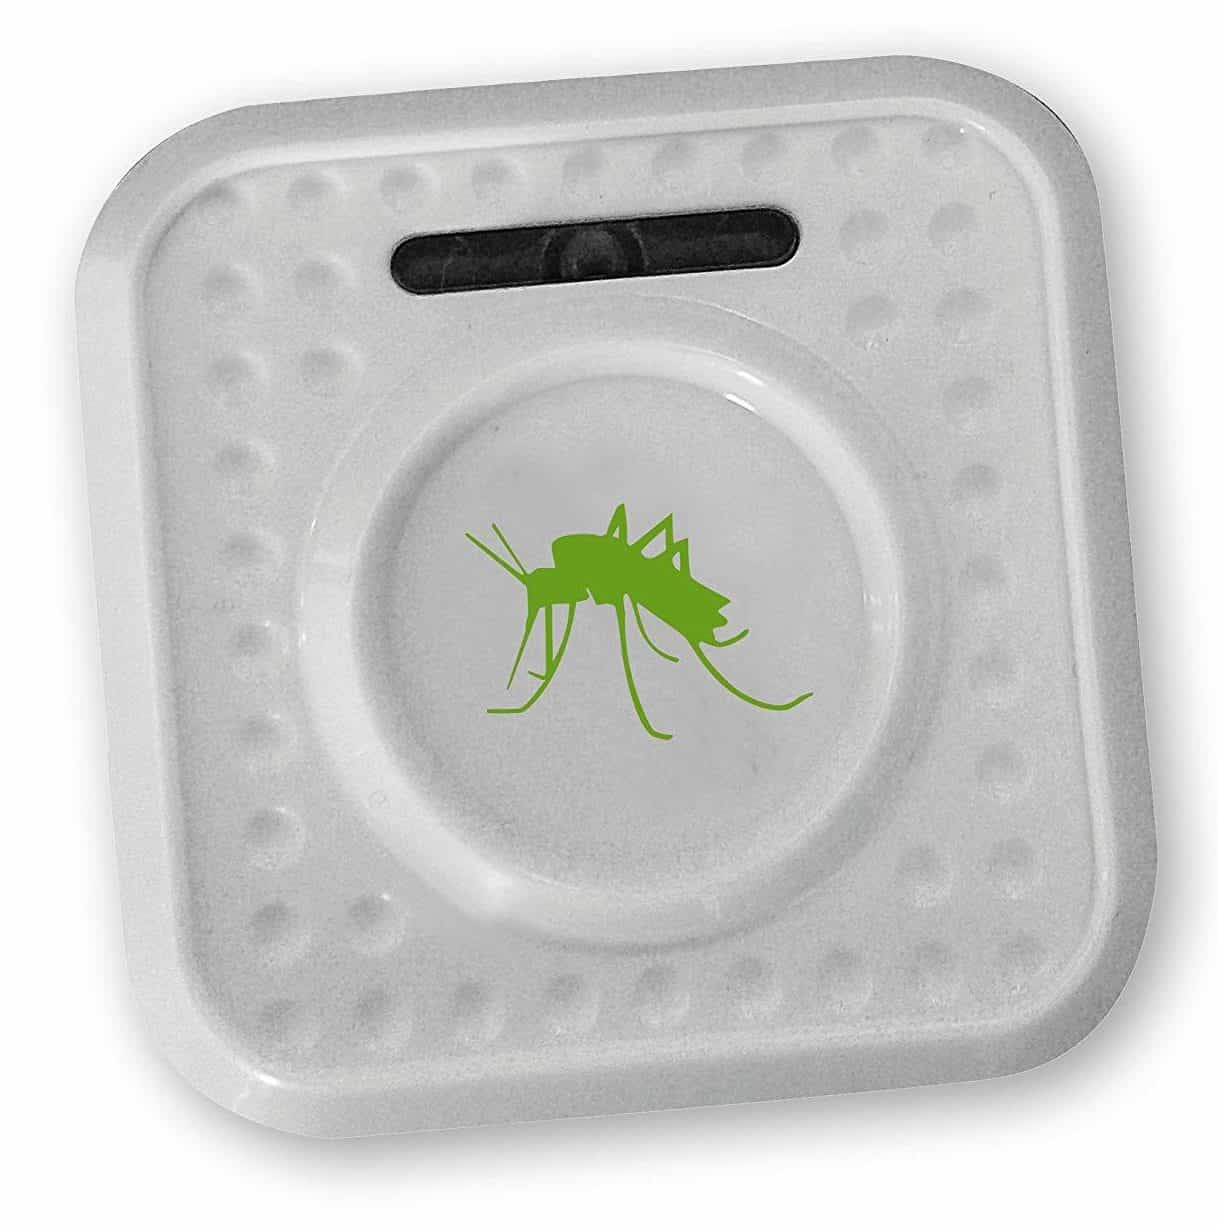 EU Plug moustiques rats insectes Xisunred Répulsif Ultrason Anti Moustiques 2020 Lot de 2 répulsifs avec technologie de conversion de fréquence Plug in Bionic Wave pour araignées 